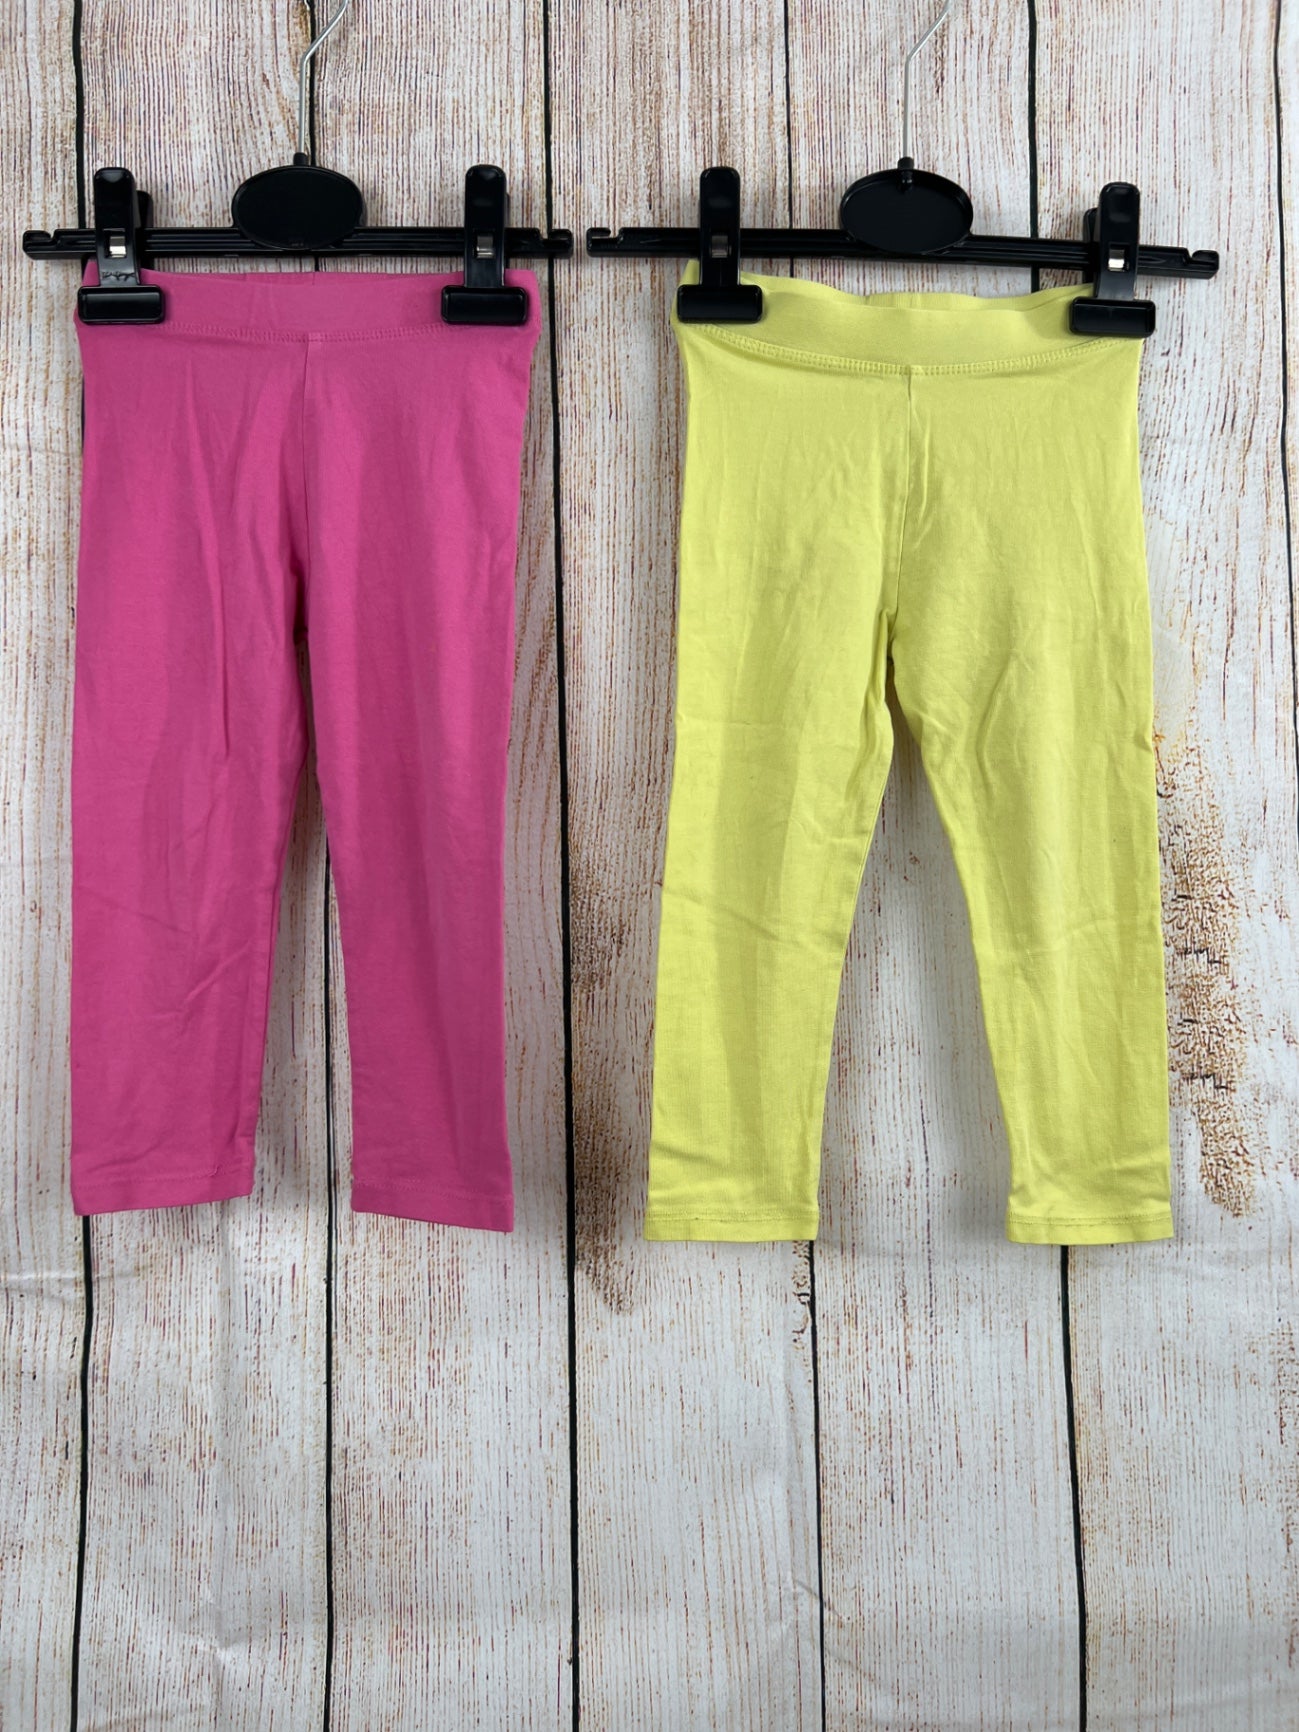 Doppelpack Leggings pink/ gelb Gr. 92